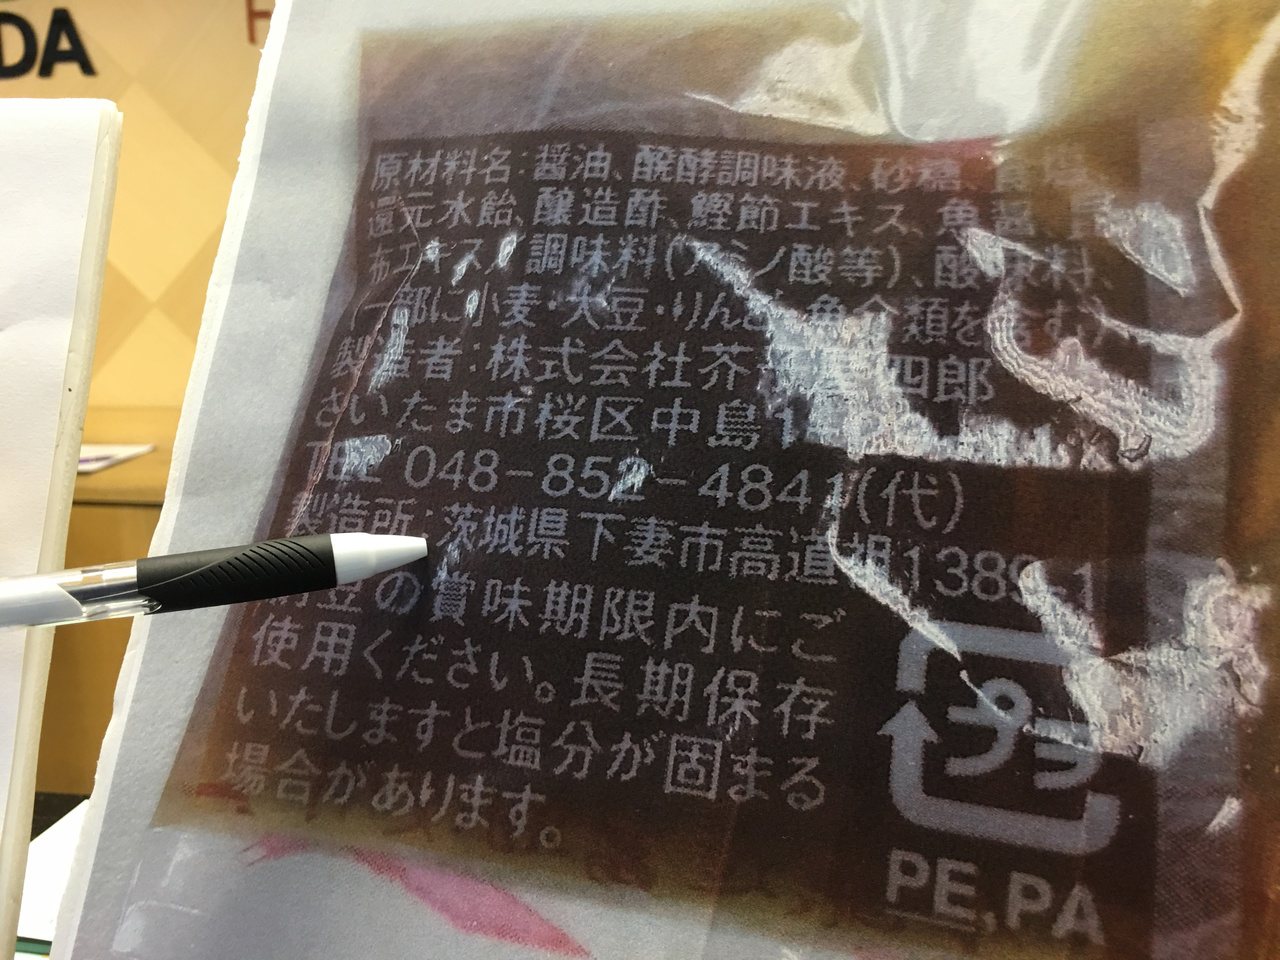 太冠國際公司輸入國內的納豆產品，其內贈之醬油包的包裝產地標示，竟是日本茨城縣。 記者鄧桂芬／攝影